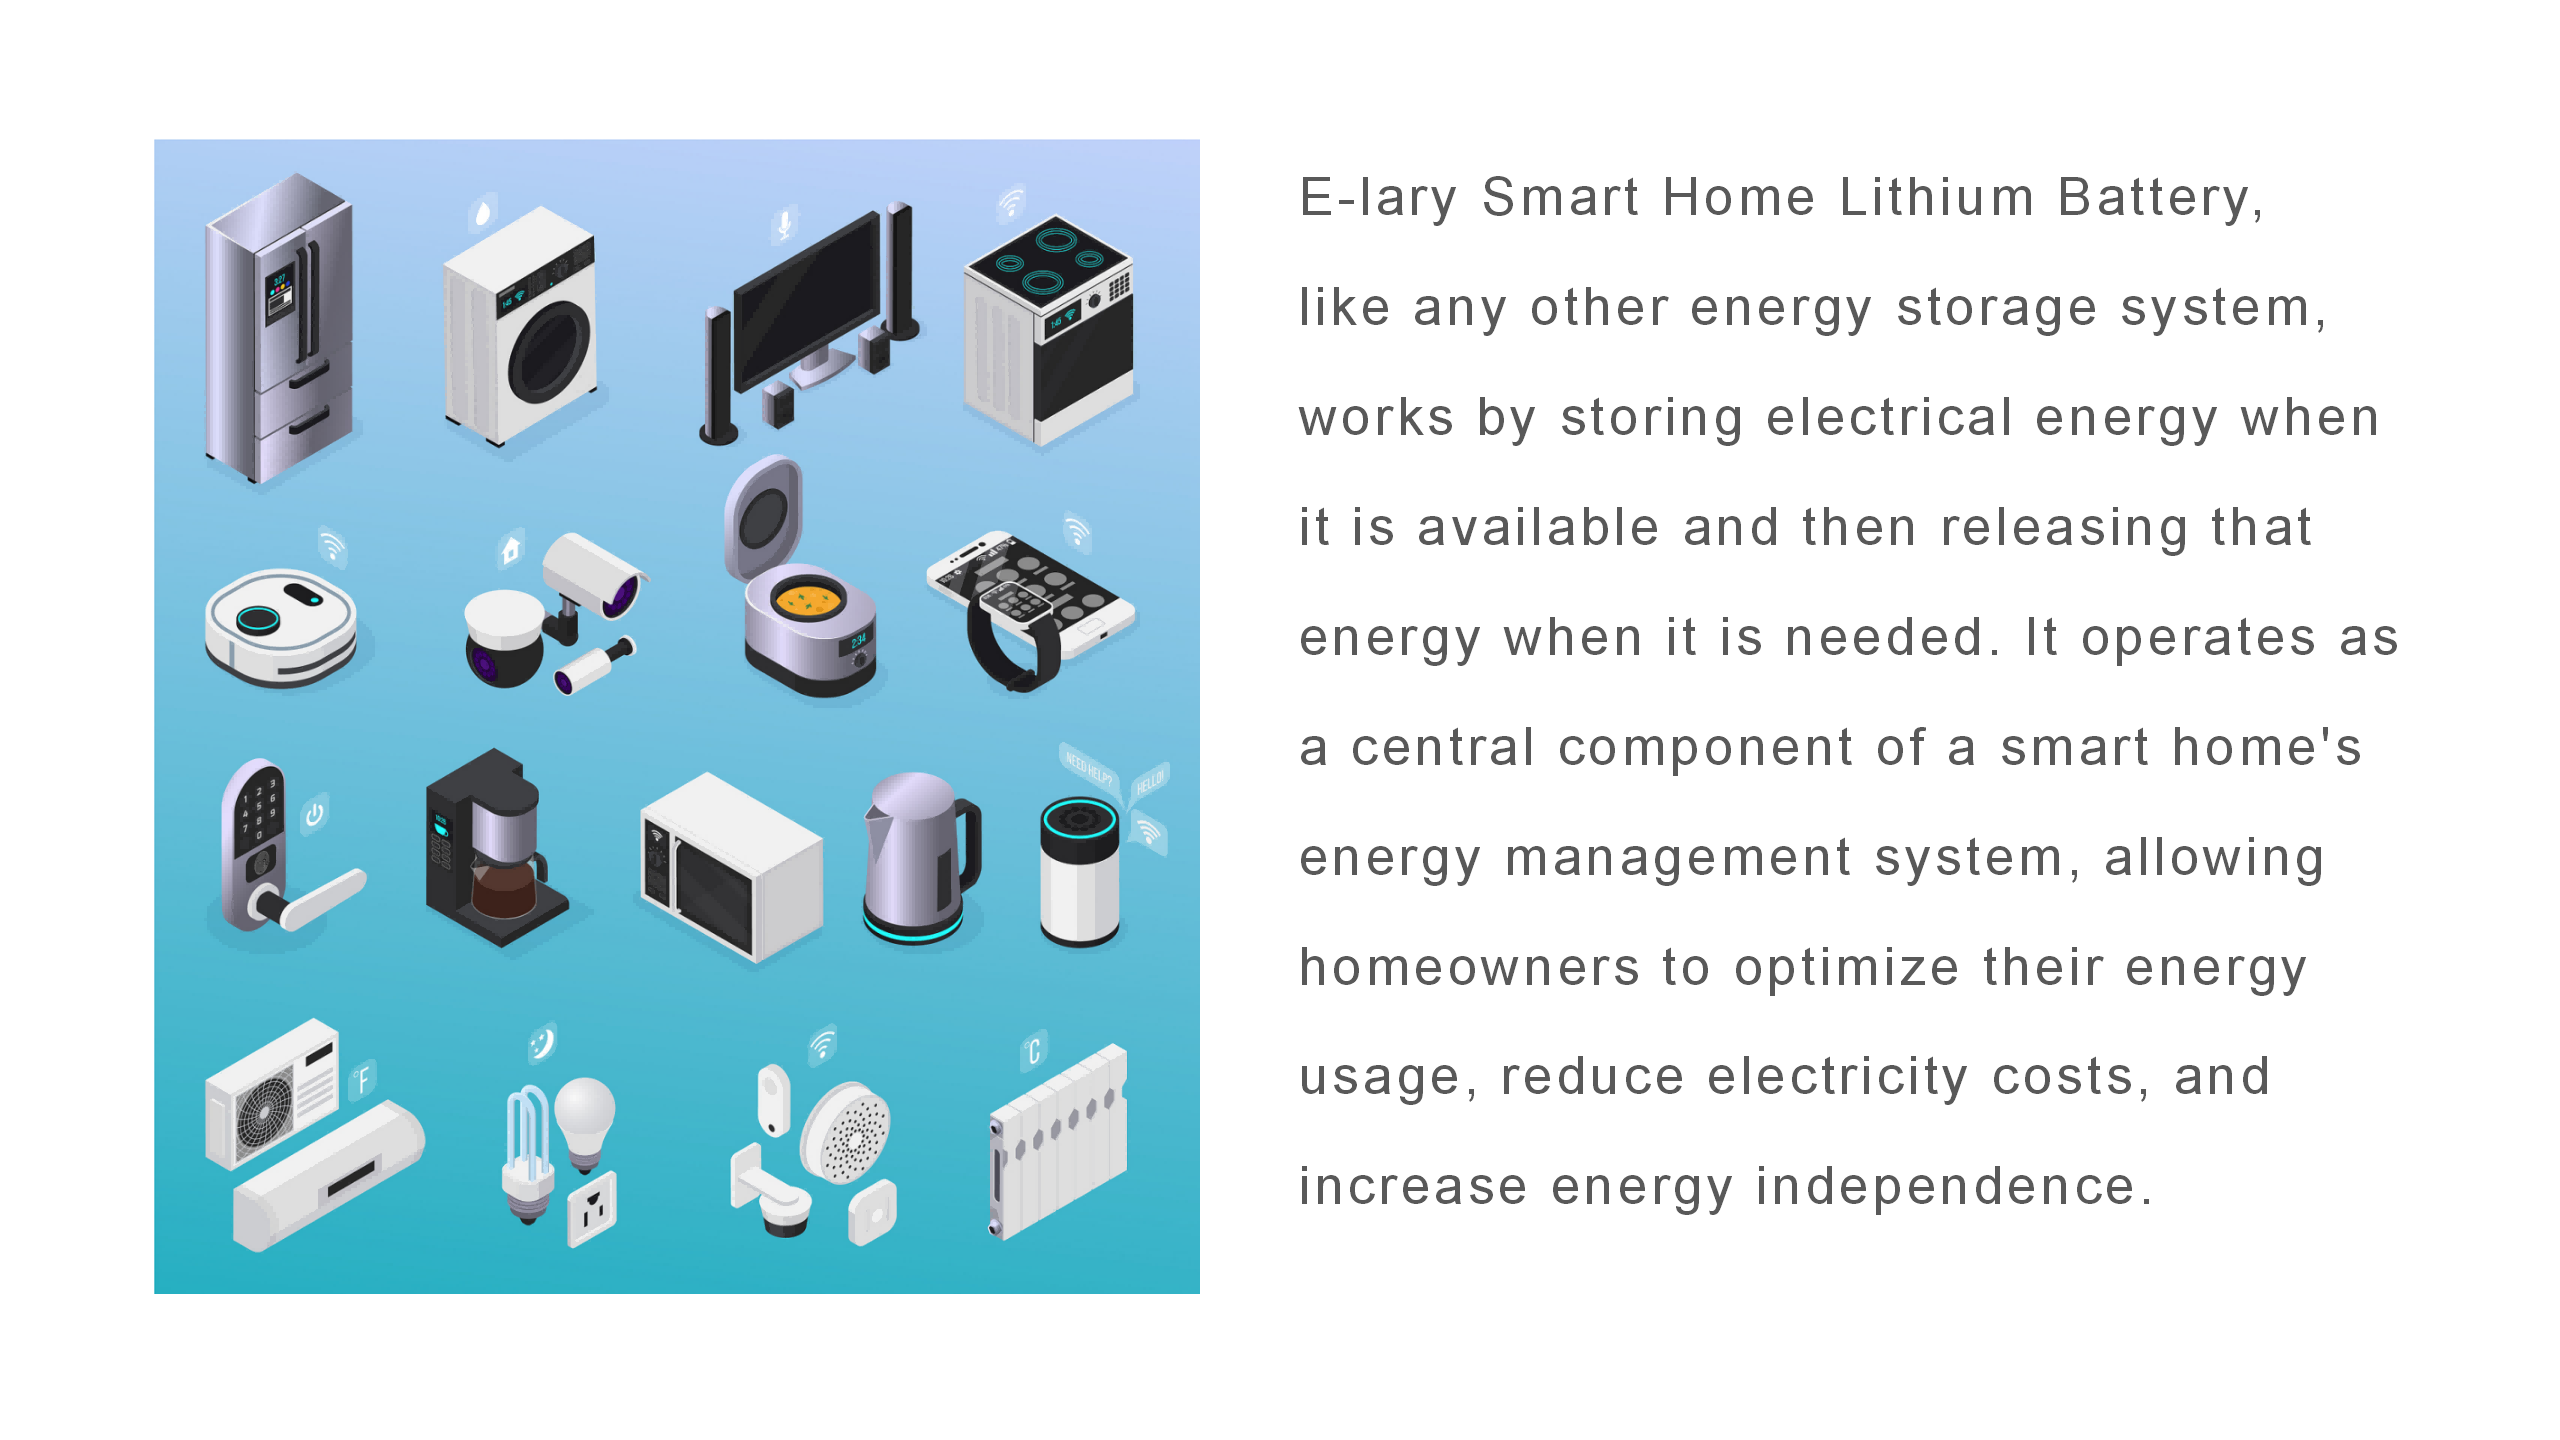 ¿Cómo funciona la batería de litio E-lary Smart Home?